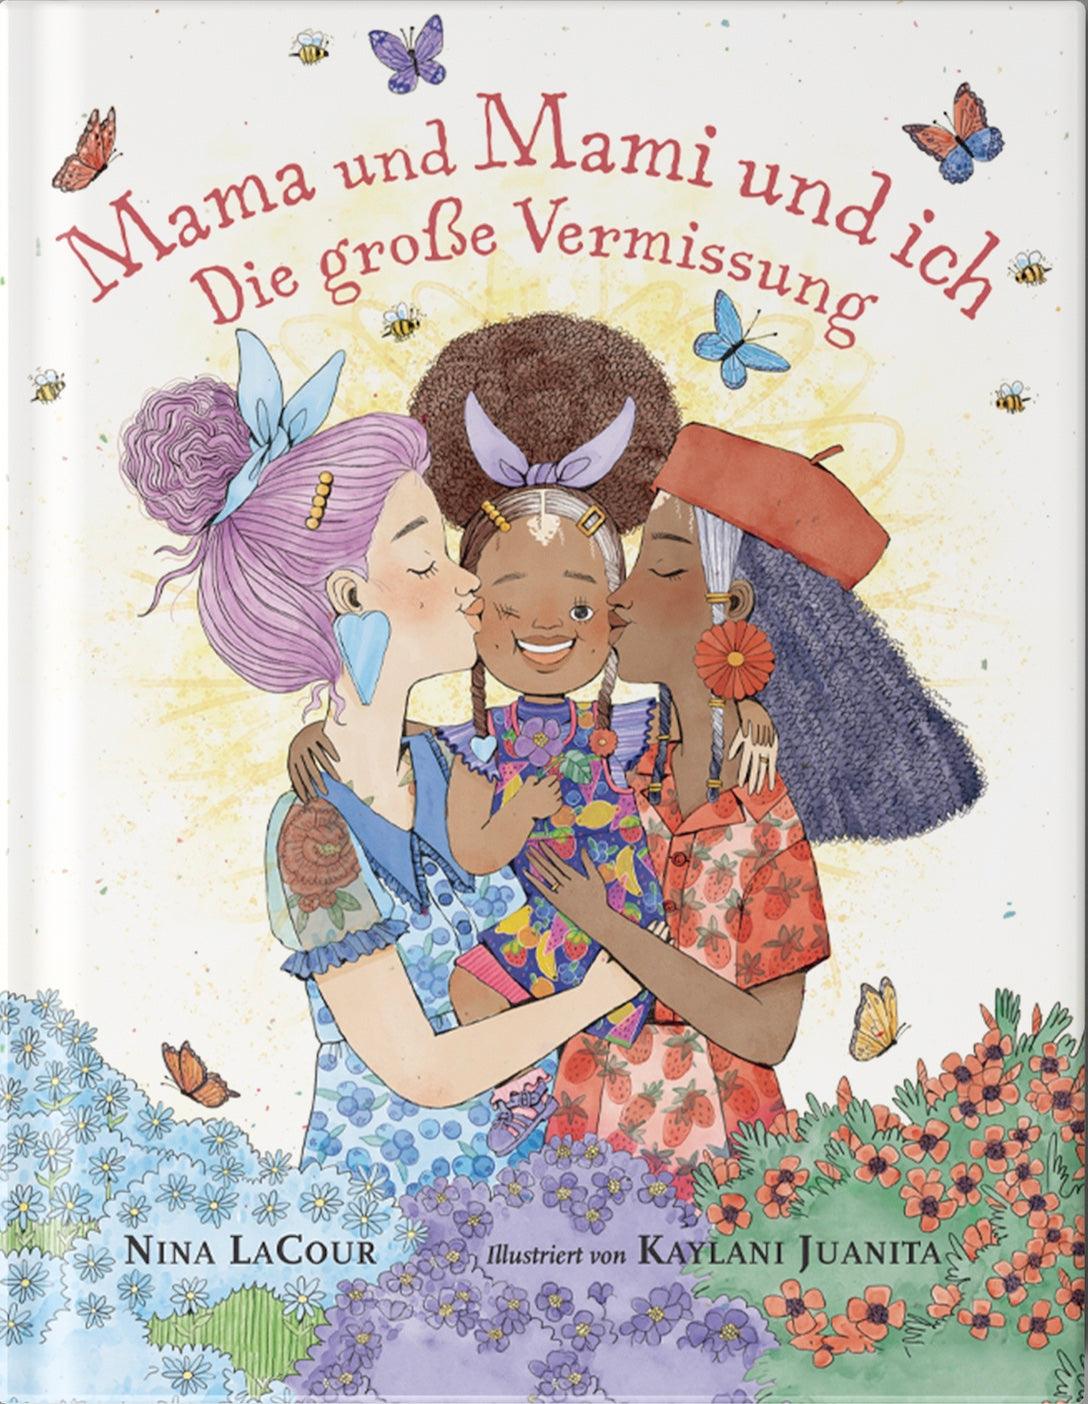 Zuckersüß Verlag - Mama und Mami und ich: Die große Vermissung - Makimo - Smart Kids